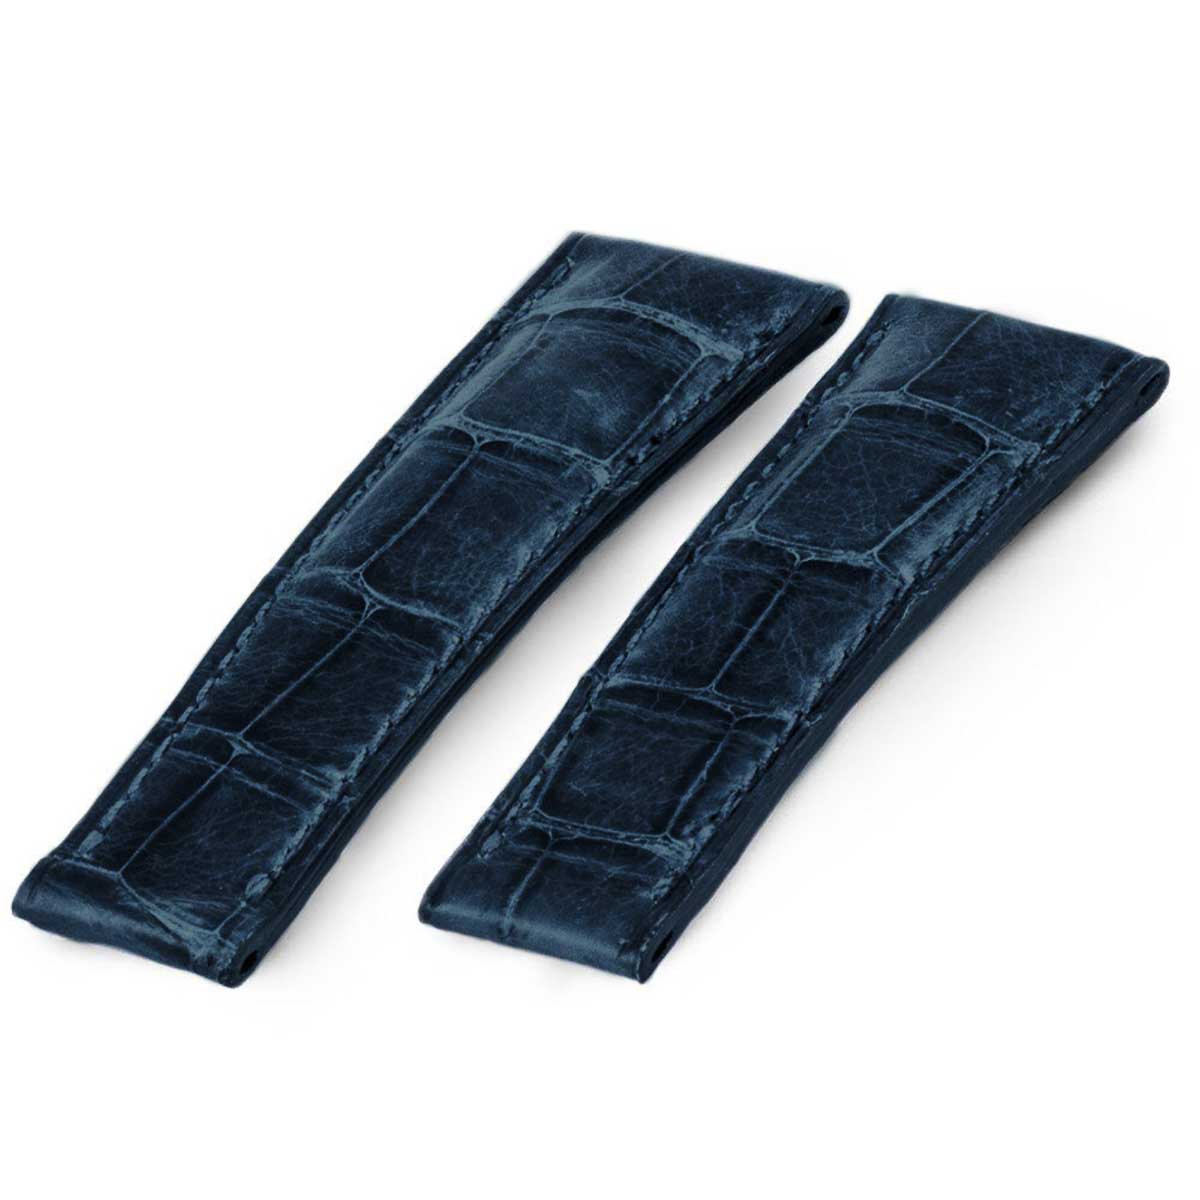 Rolex Cosmograph Daytona - Bracelet-montre cuir à éléments - Alligator (noir / rouge, bleu jean, marron) - watch band leather strap - ABP Concept -